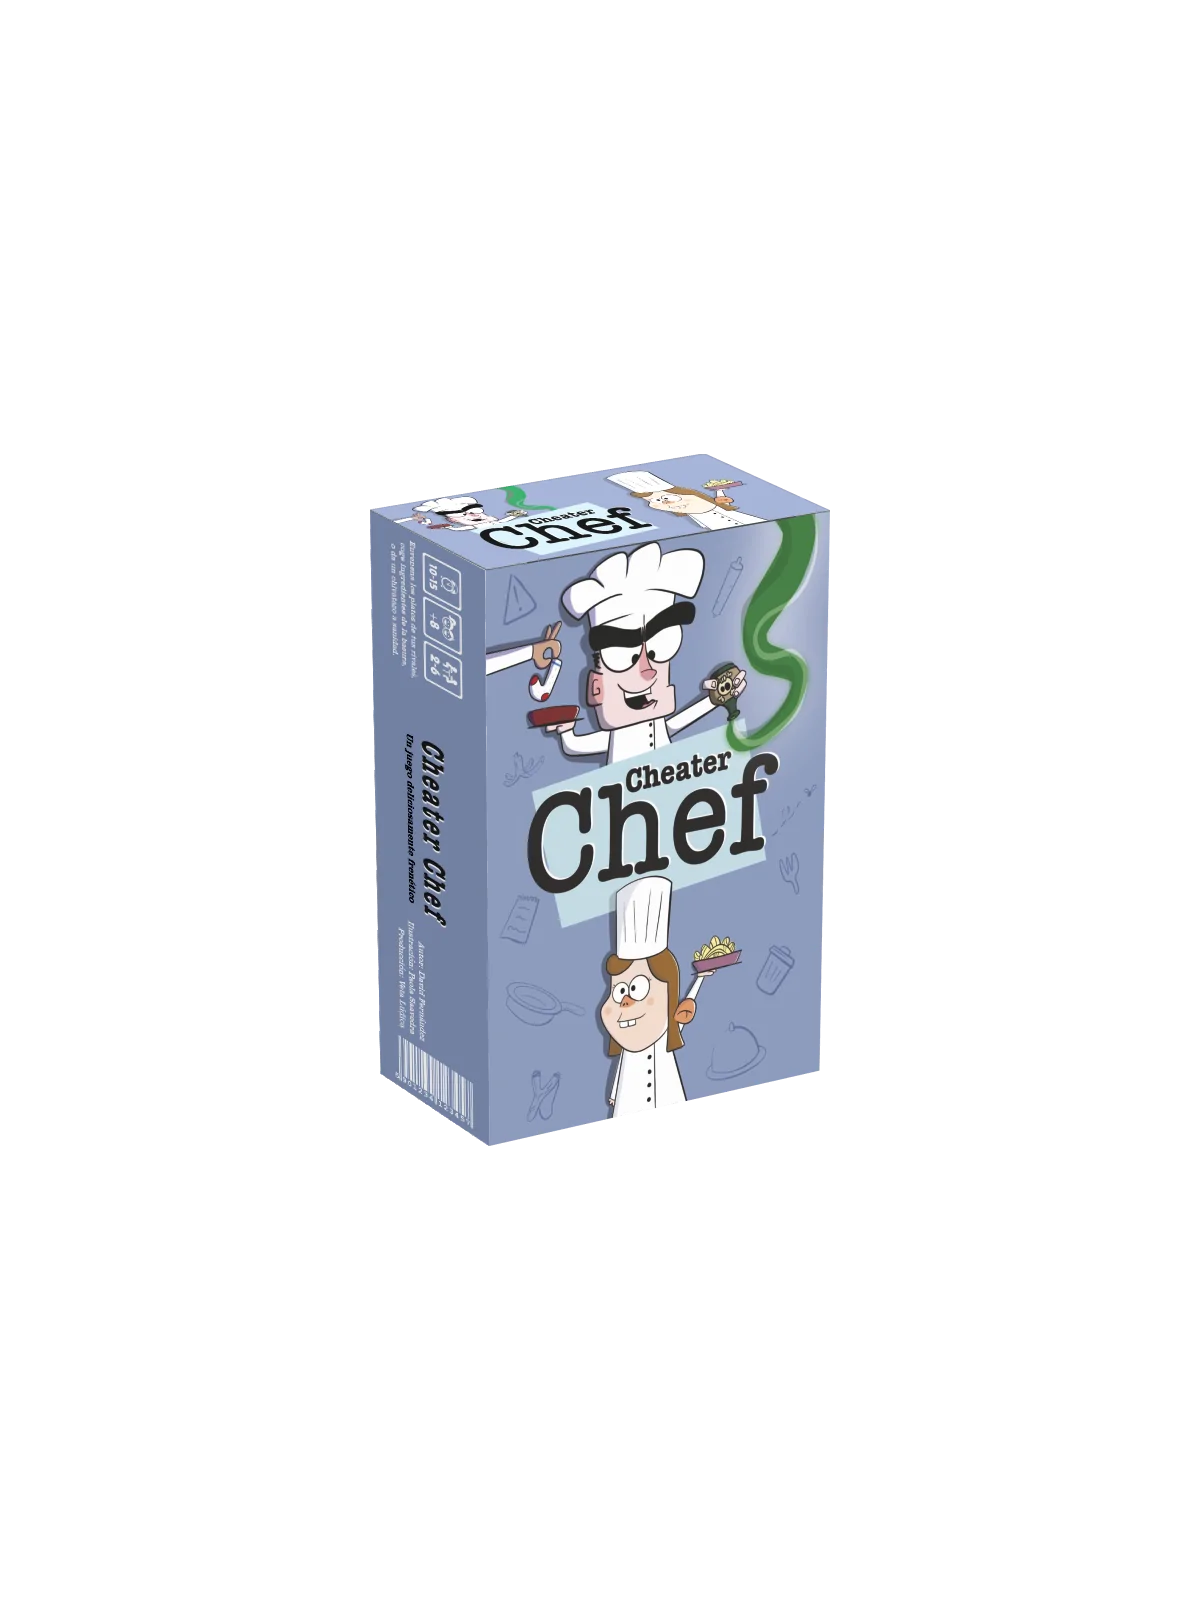 Comprar Cheater Chef barato al mejor precio 17,99 € de VetaLúdica